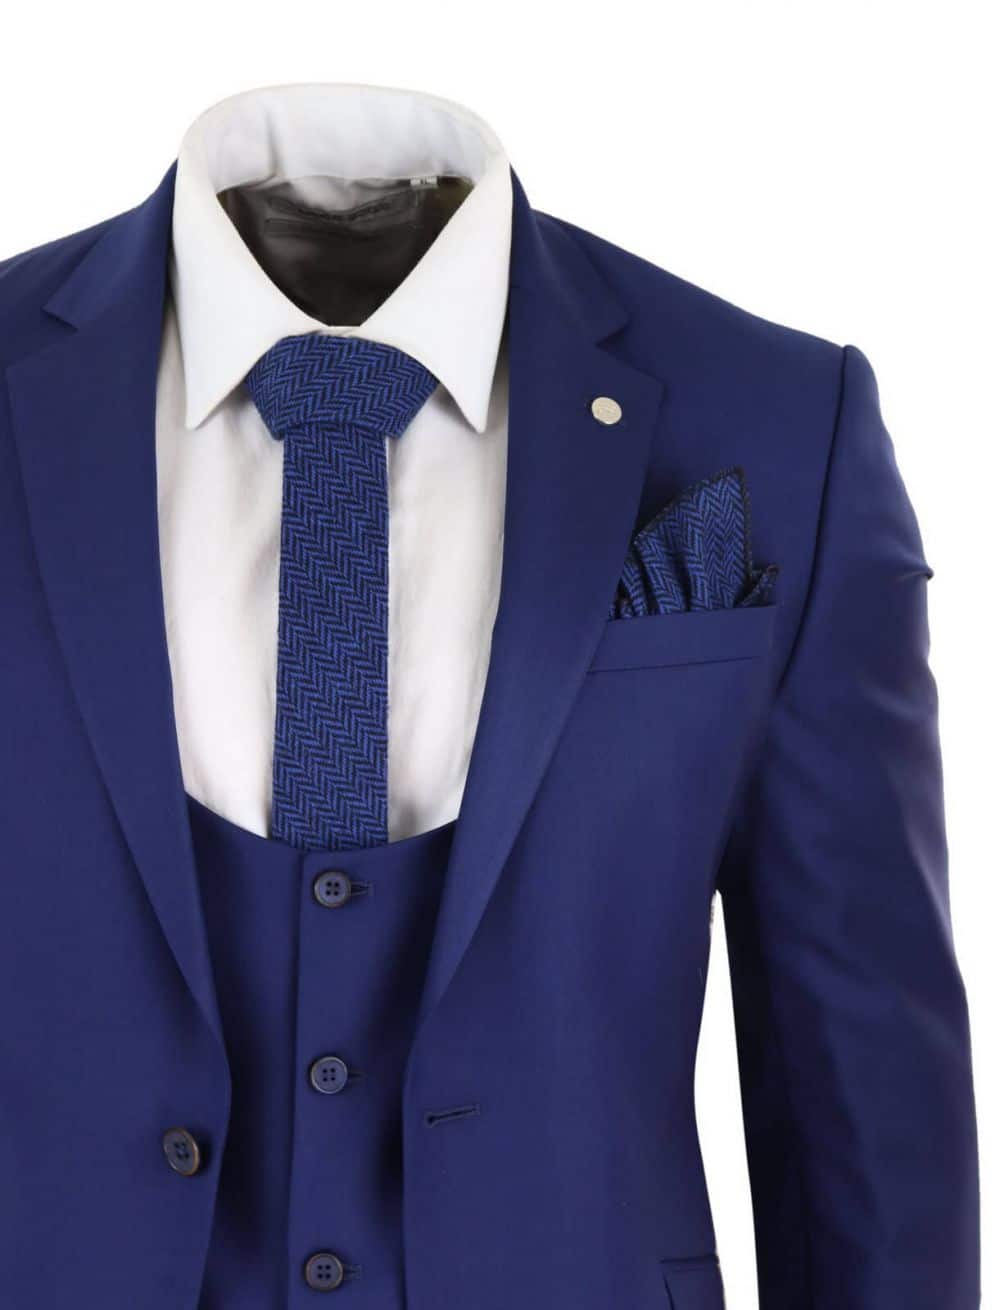 Mens Royal Blue 3 Piece Wedding Suit: Buy Online - Happy Gentleman